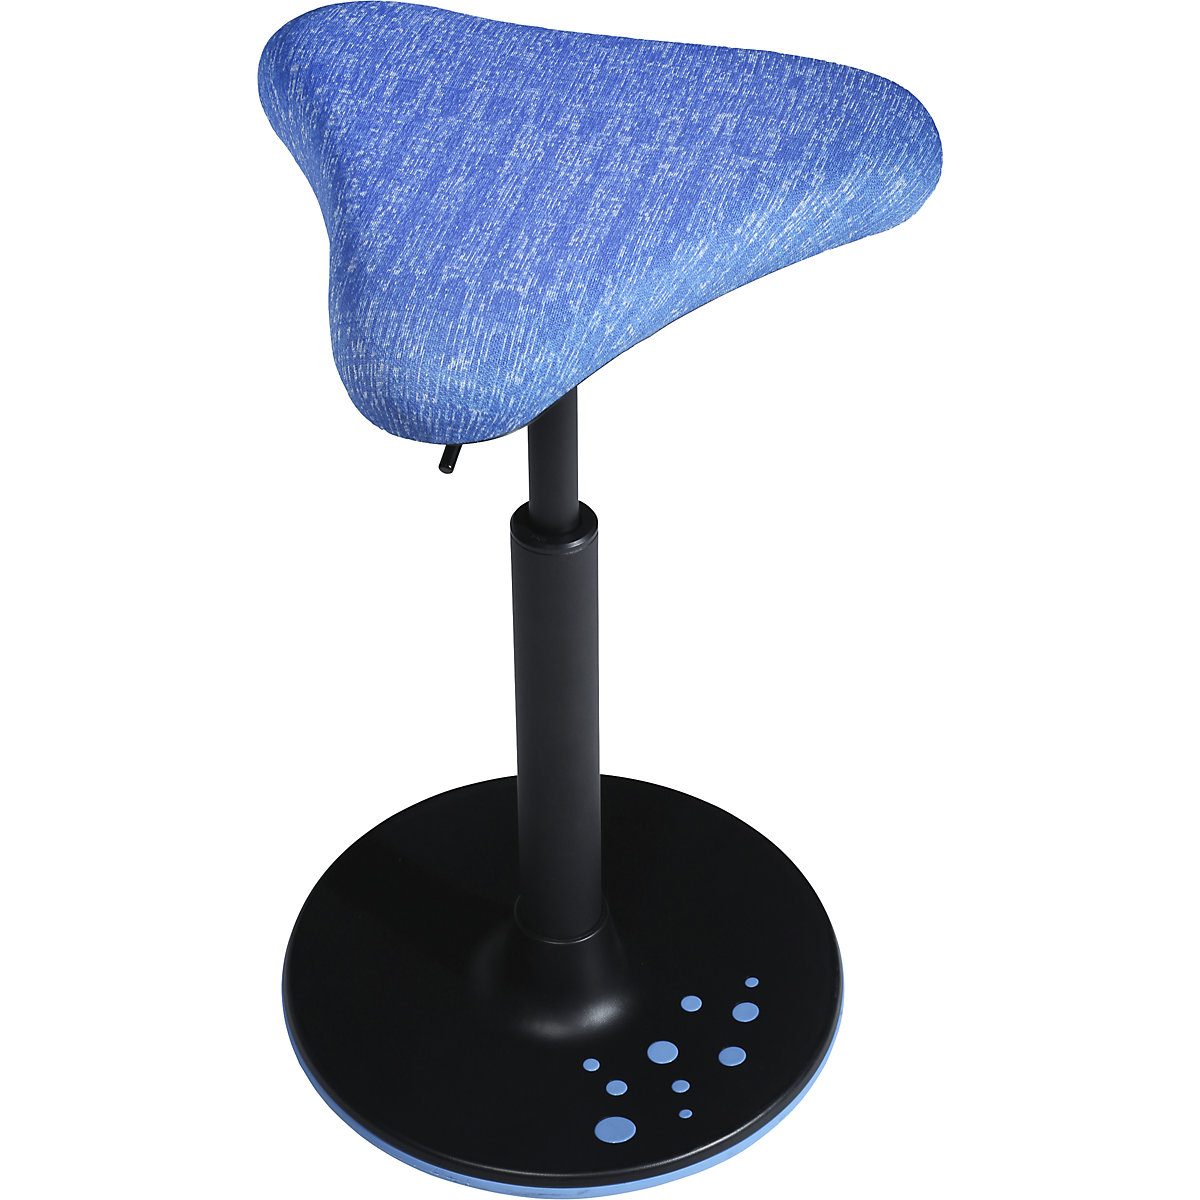 Balanční stolička SITNESS H – Topstar, model H1, s trojúhelníkovým sedákem, modrý potah se vzorem, patka modrá-5